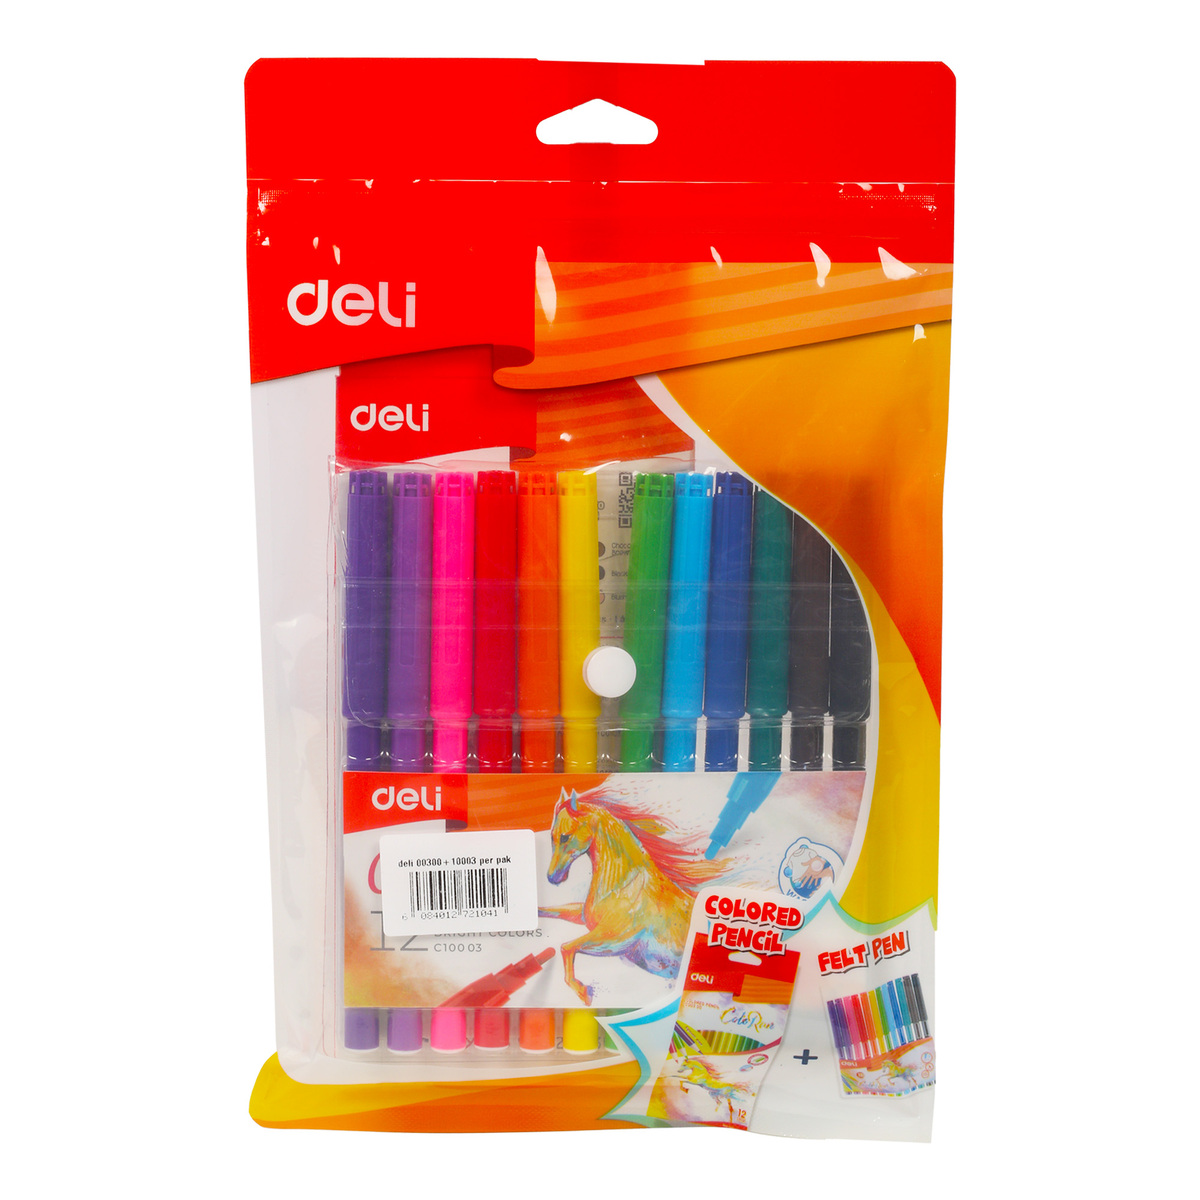 Deli Colored Pencil + Felt Pen 3128